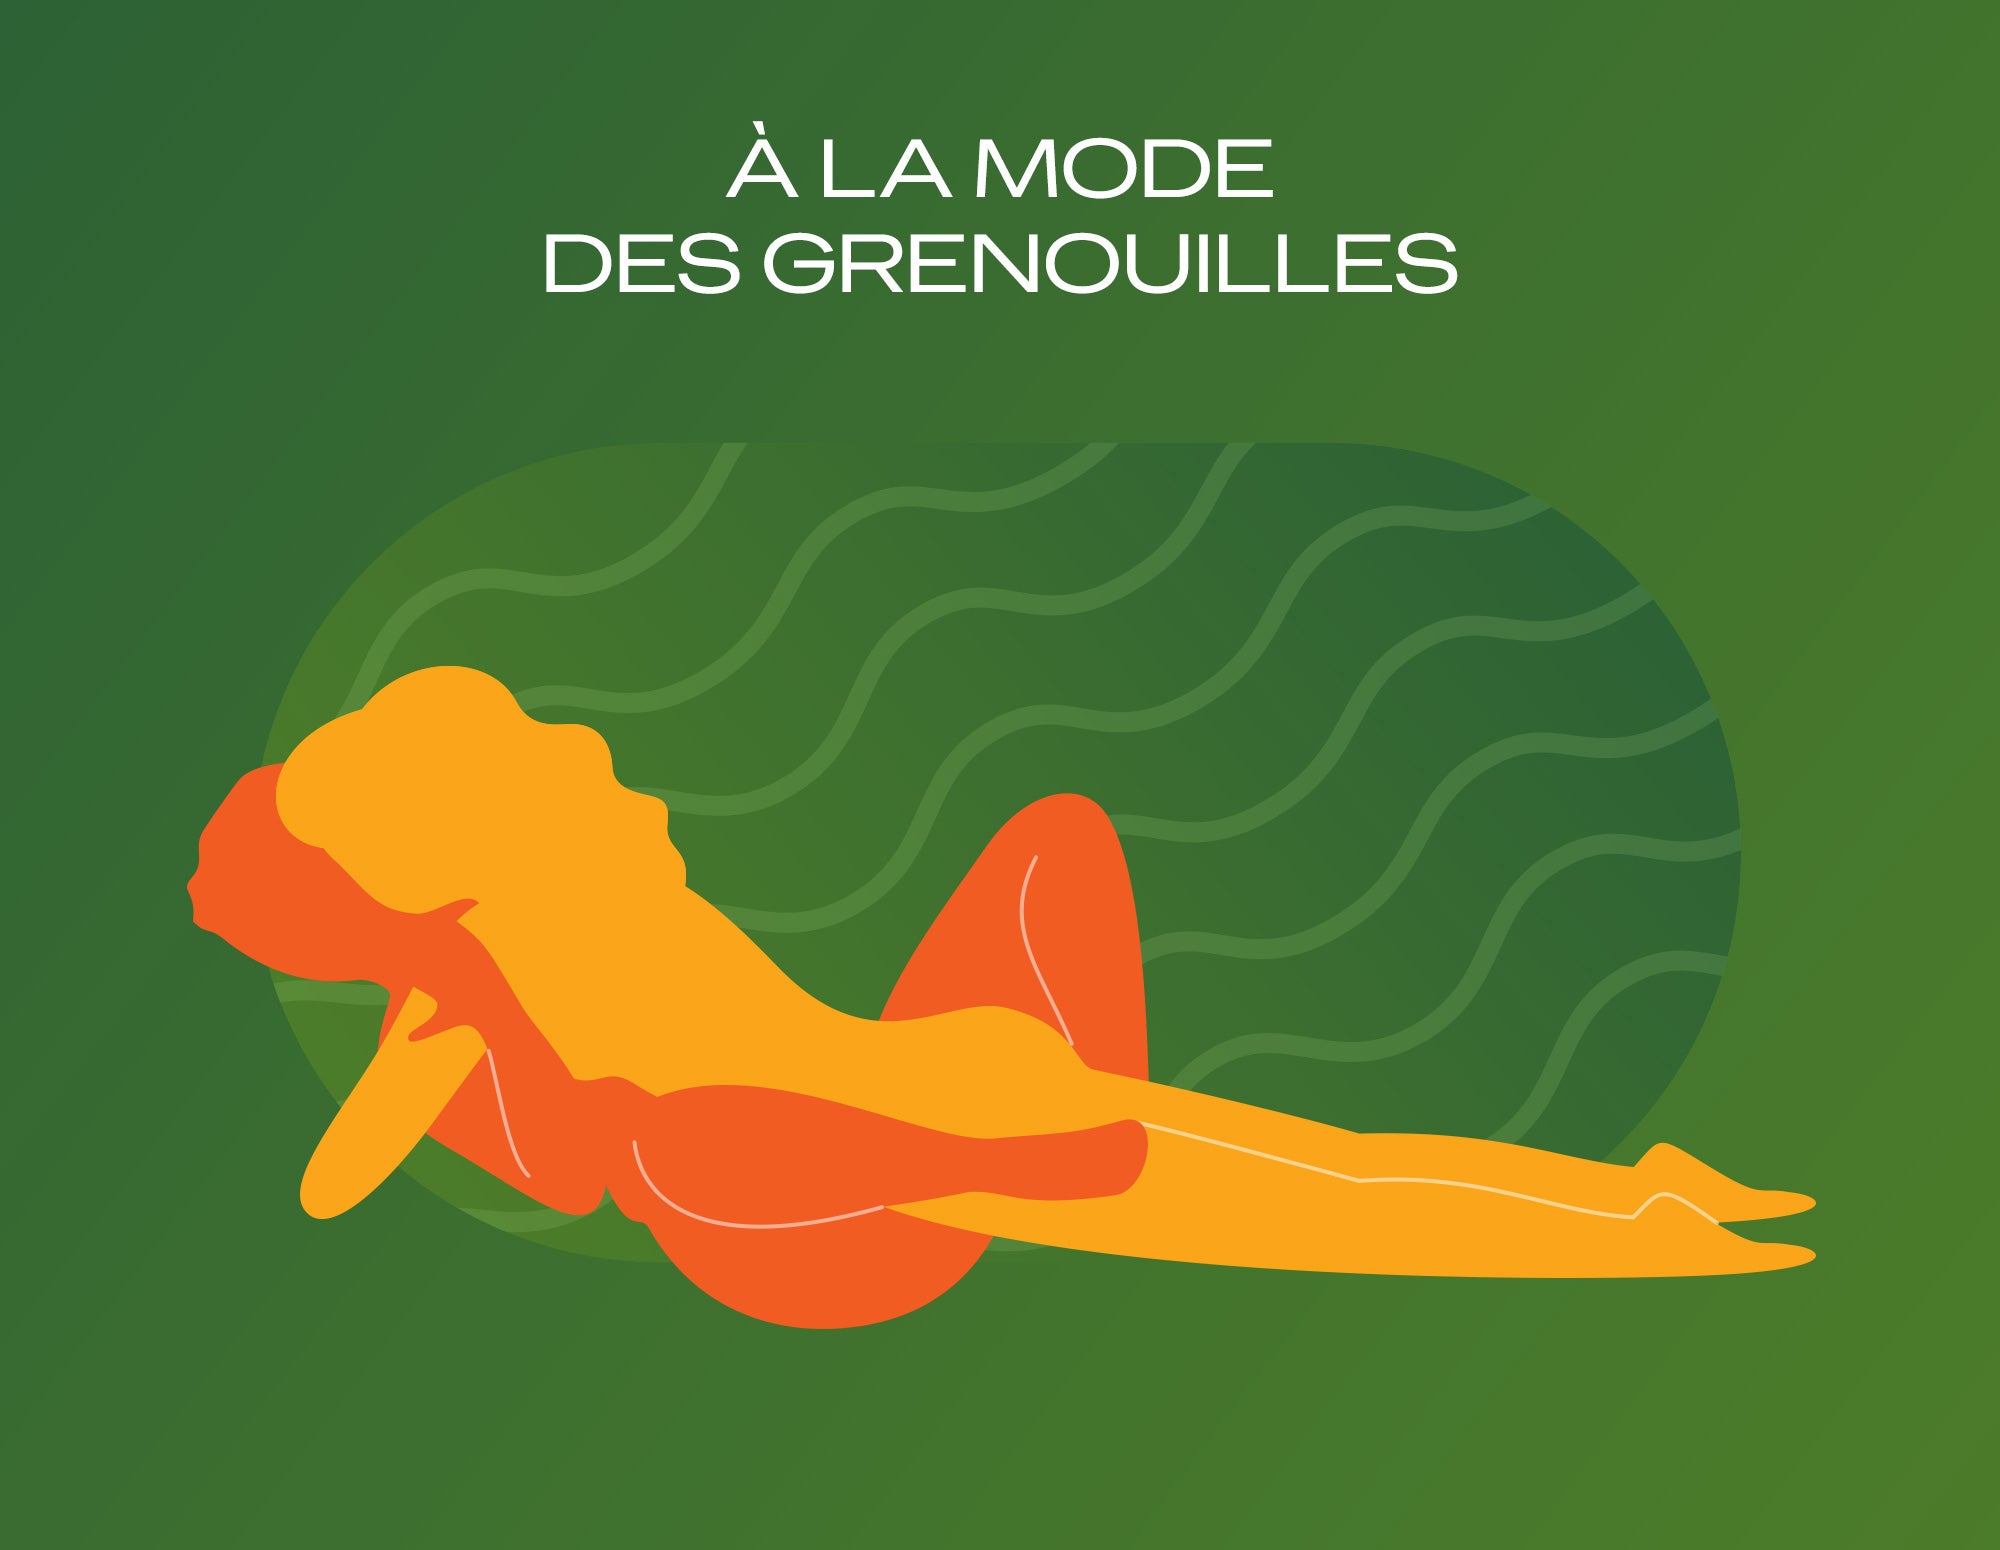 Illustration de la position sexuelle « À la mode des grenouilles » sur fond vert.